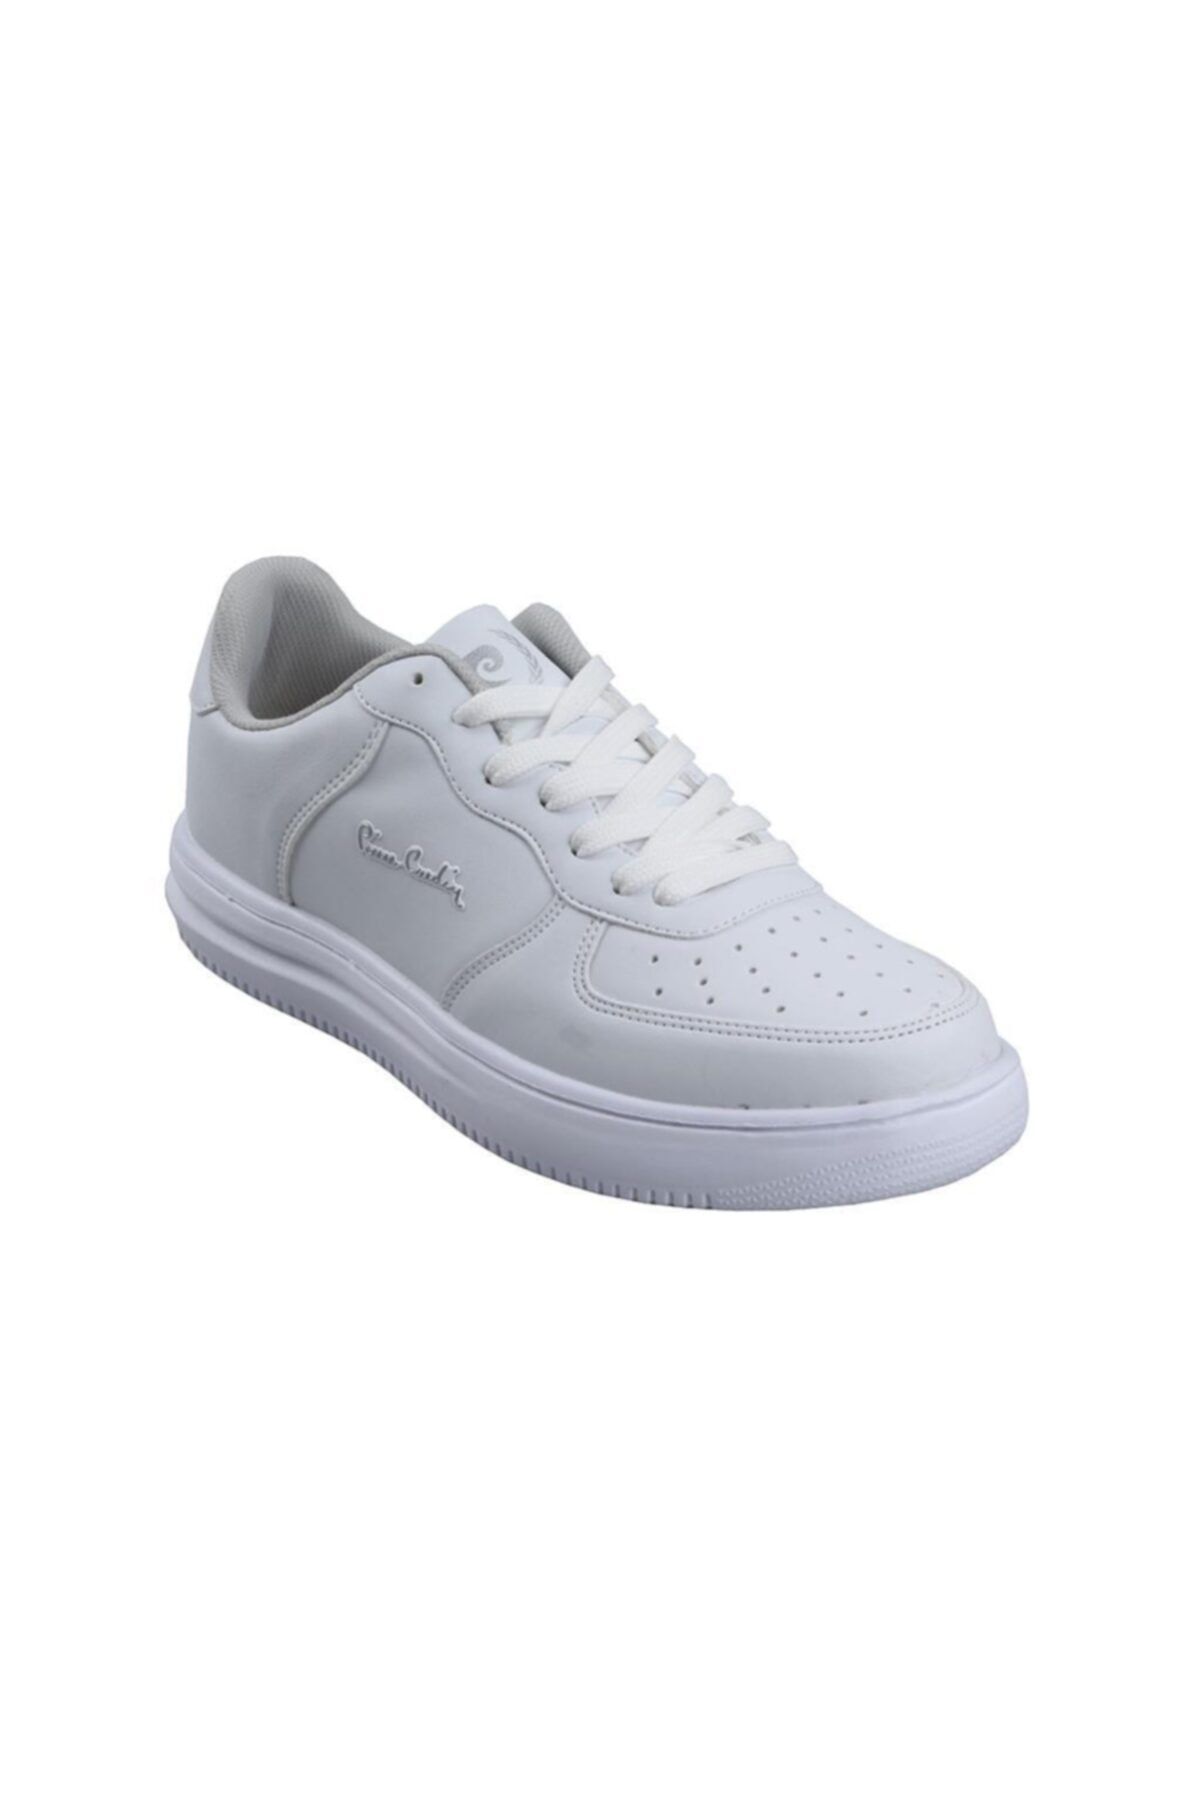 Pierre Cardin Unisex Çocuk Beyaz Sneaker Spor Ayakkabı Pc 10148